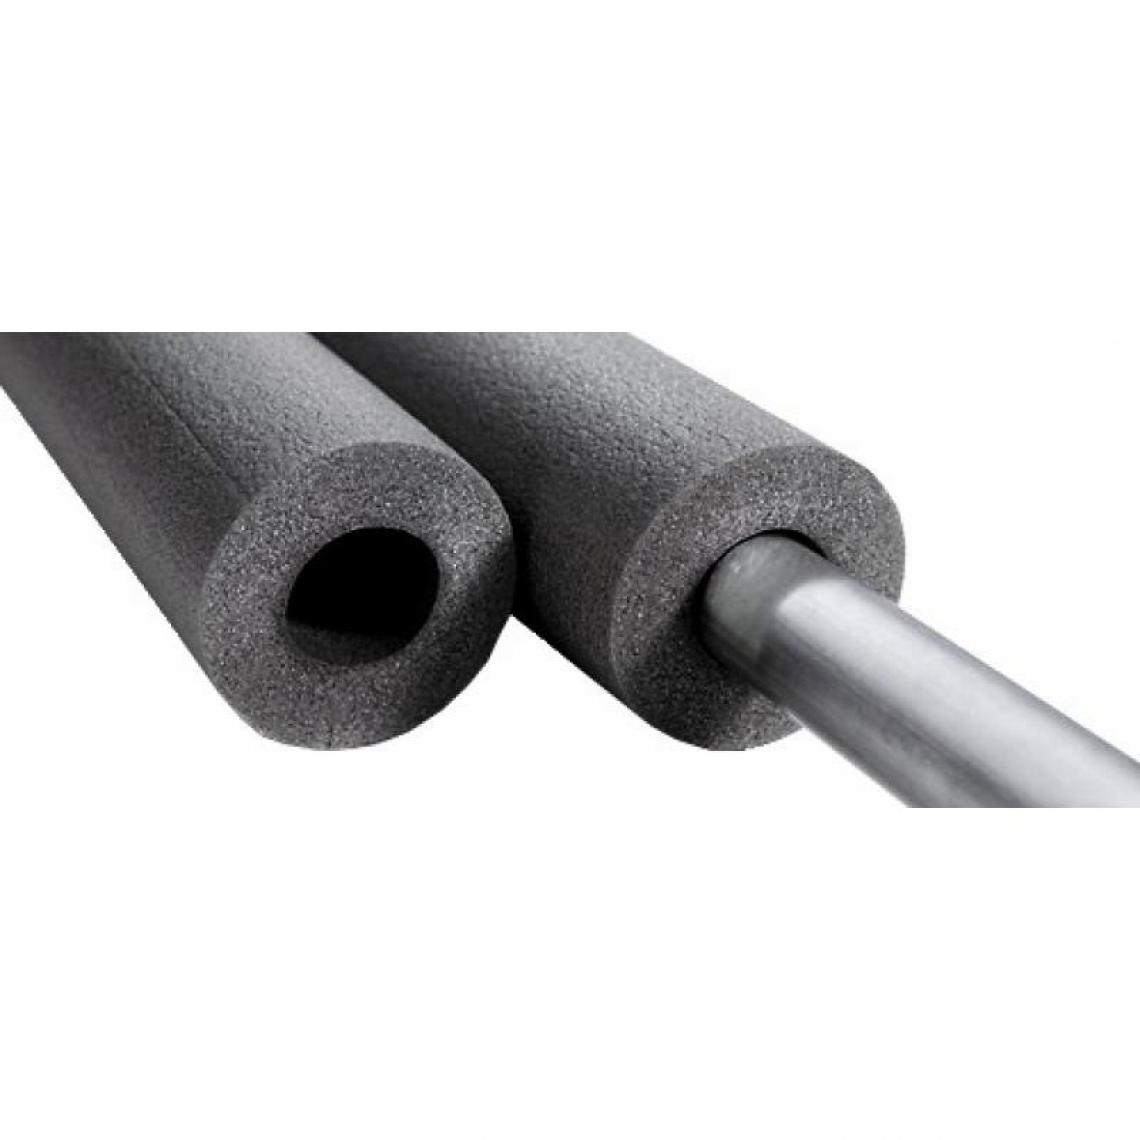 NMC - Tube isolant préfendu Climaflex, épaisseur 20 mm, longueur 2 m, pour tuyaux diamètre 60 - Coudes et raccords PVC